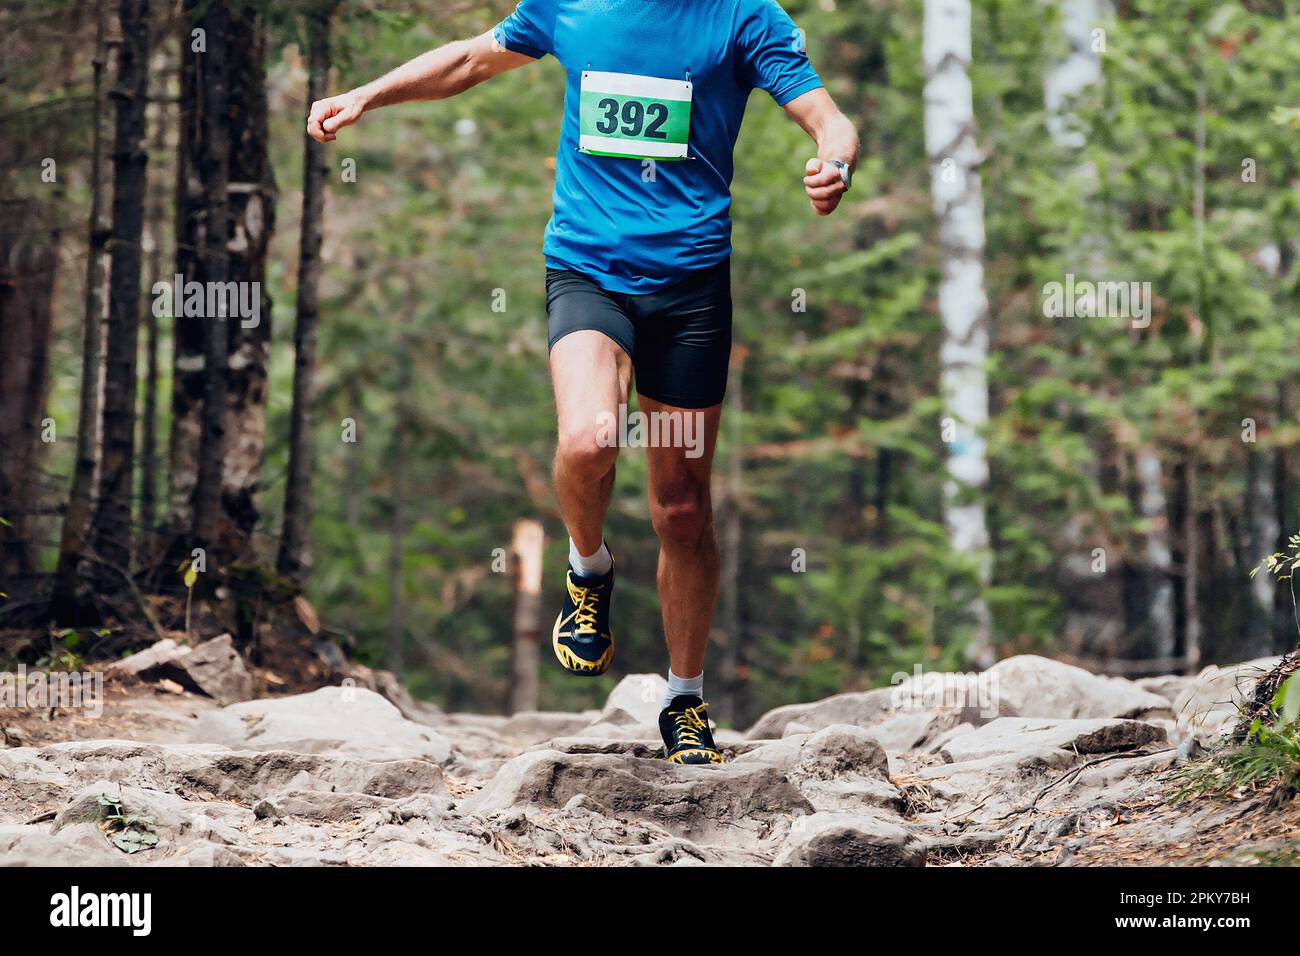 homme coureur athlète course à pied pierres course marathon en forêt, photos de sport Banque D'Images